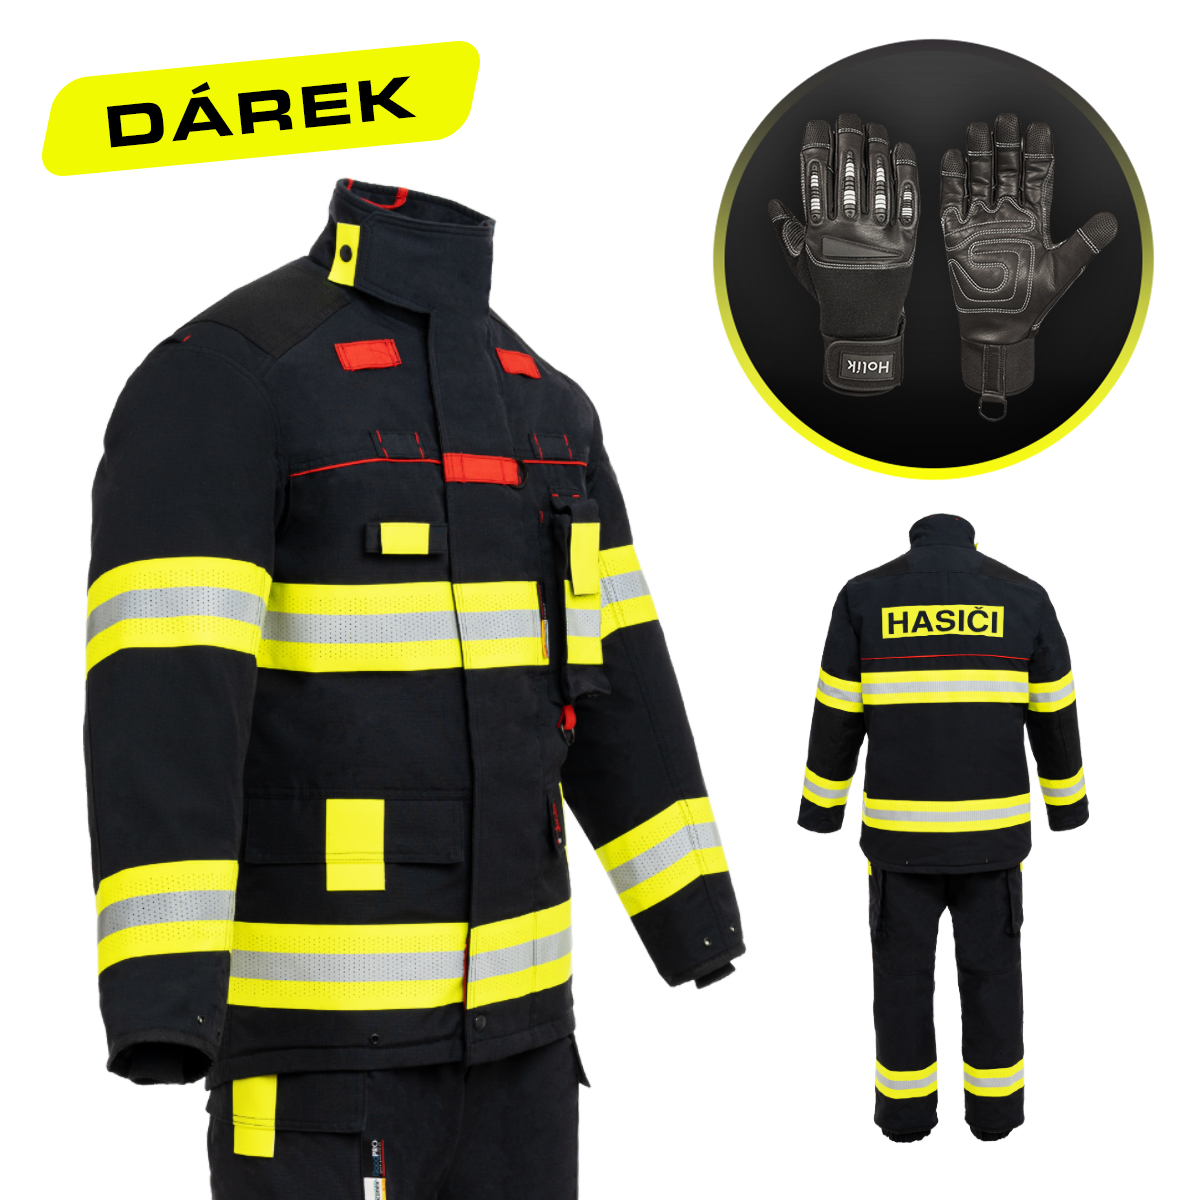 AKCE - Zásahový oděv FireRex CLASSIC + rukavice PENELOPE jako dárek